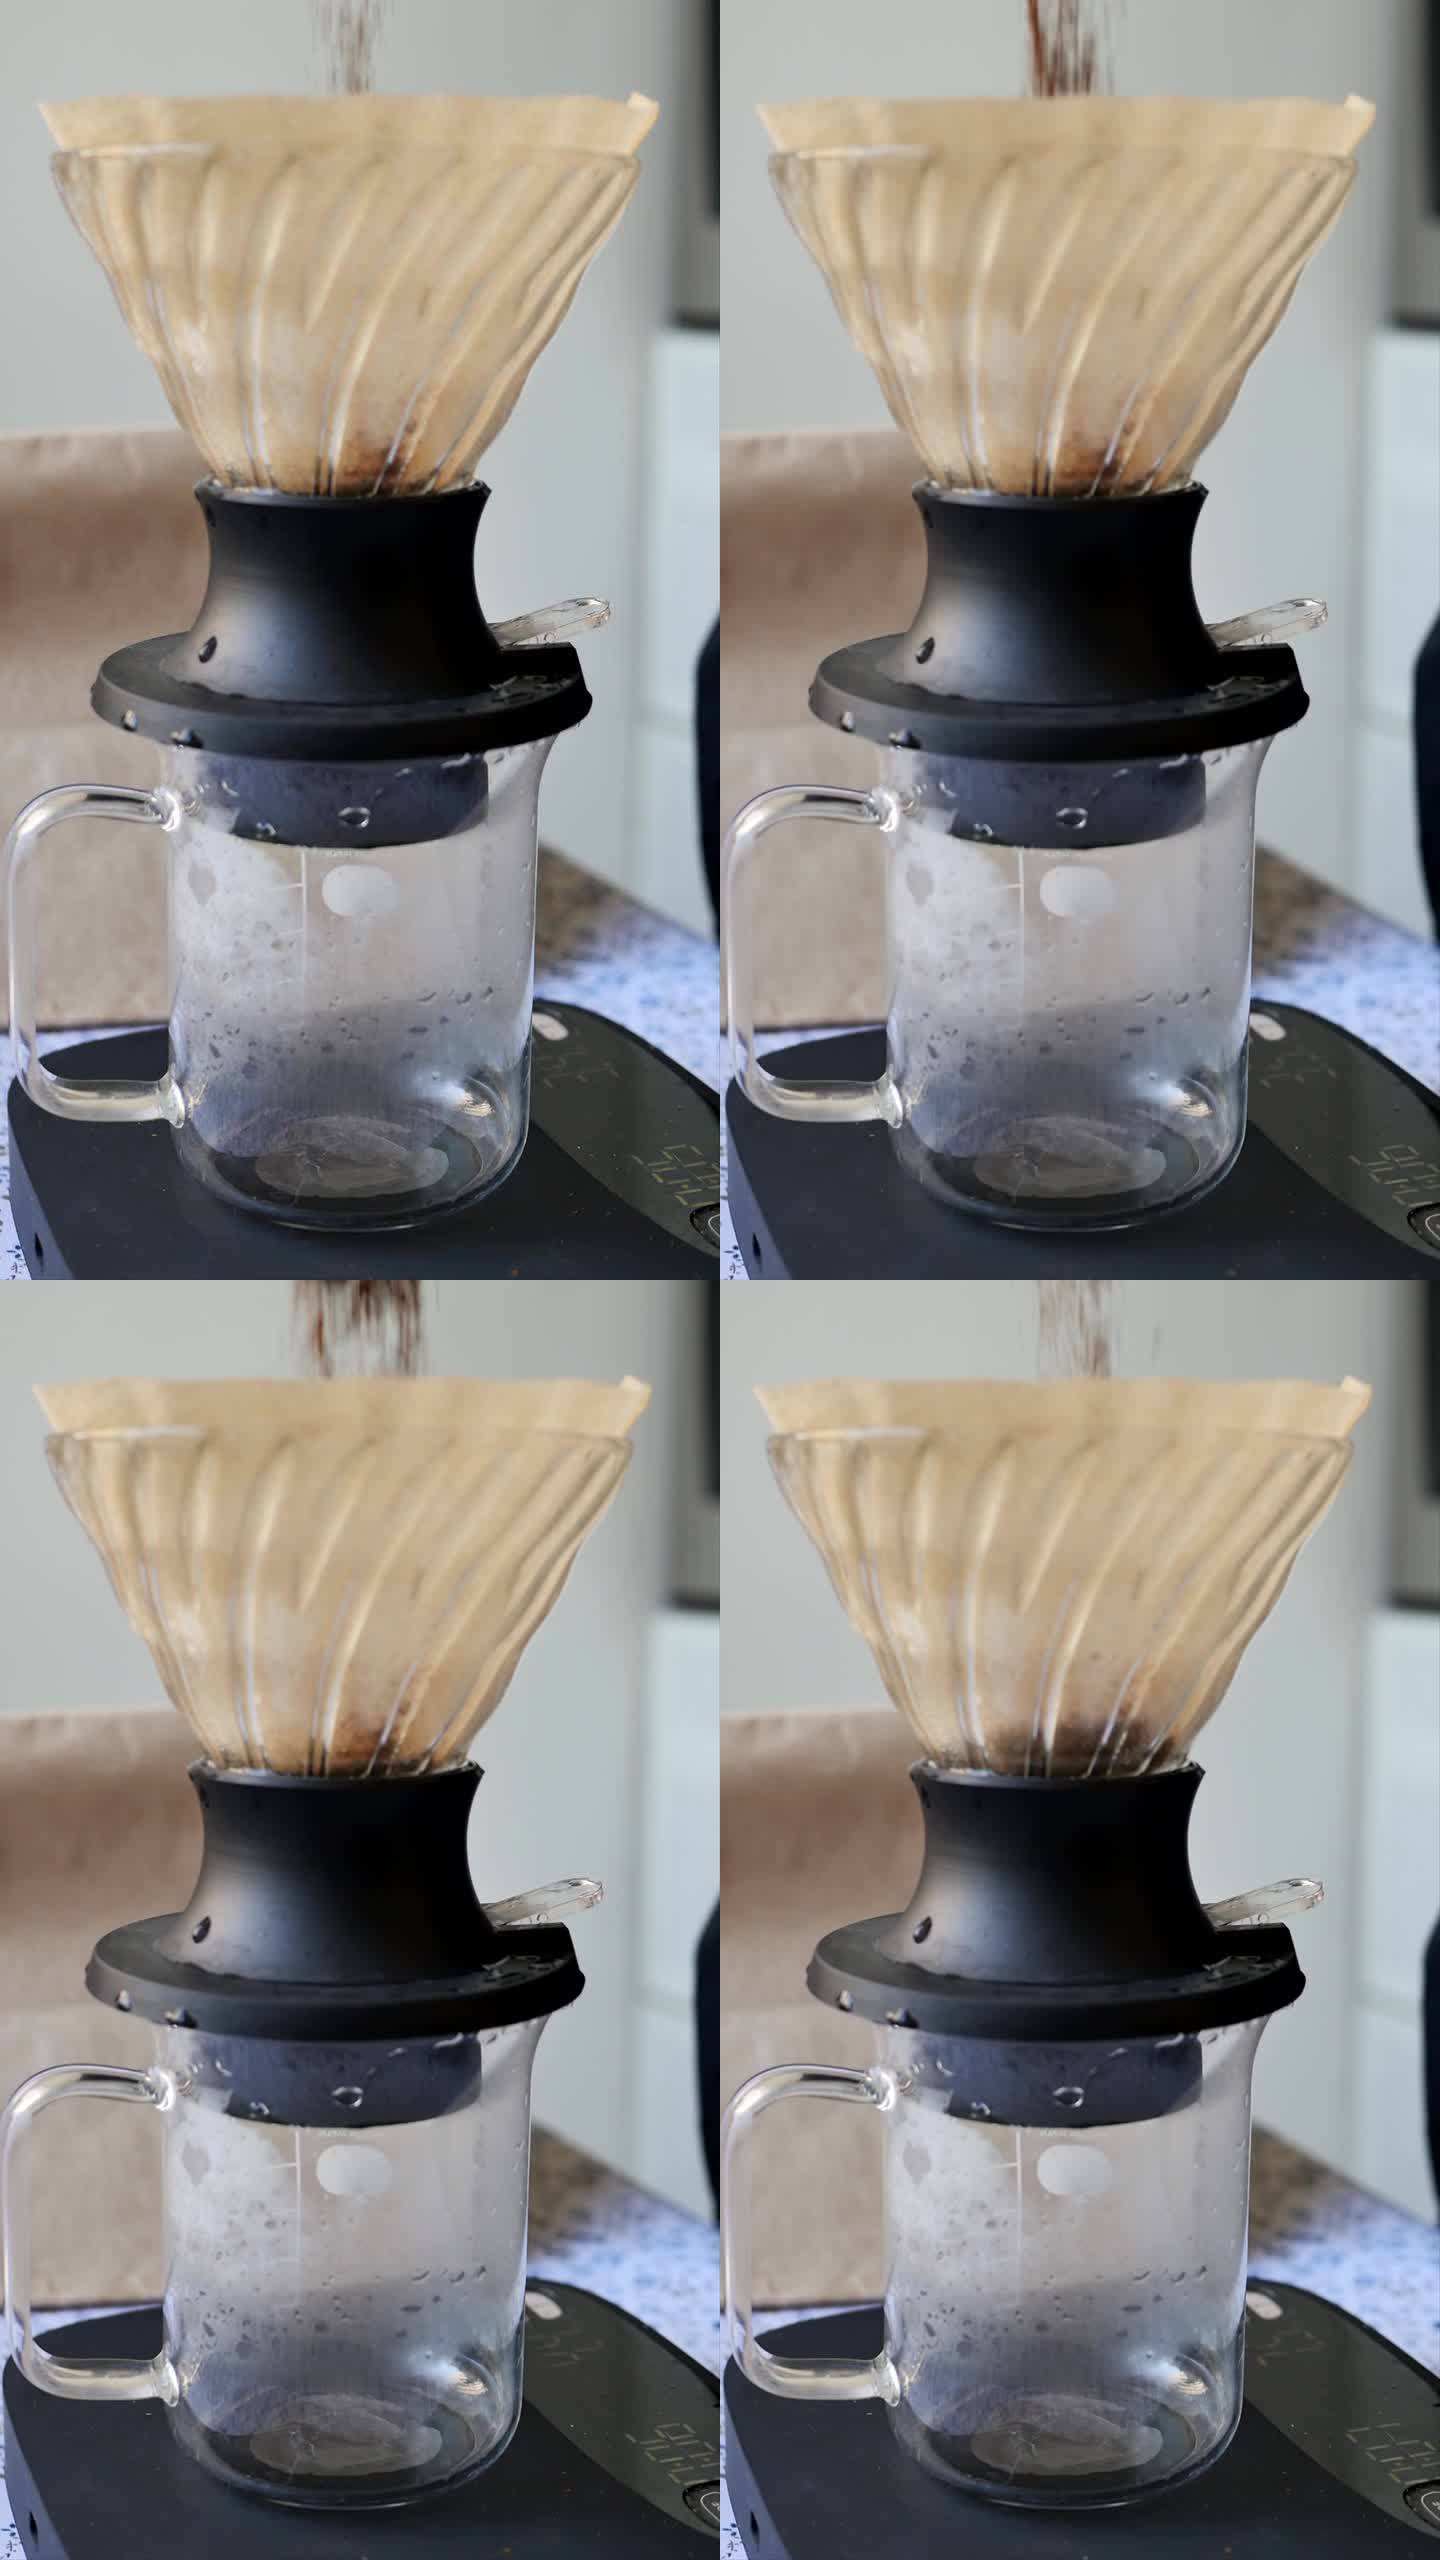 将磨碎的芳香咖啡倒入带有过滤器的杯子中，使用滴灌方法制备咖啡饮料。